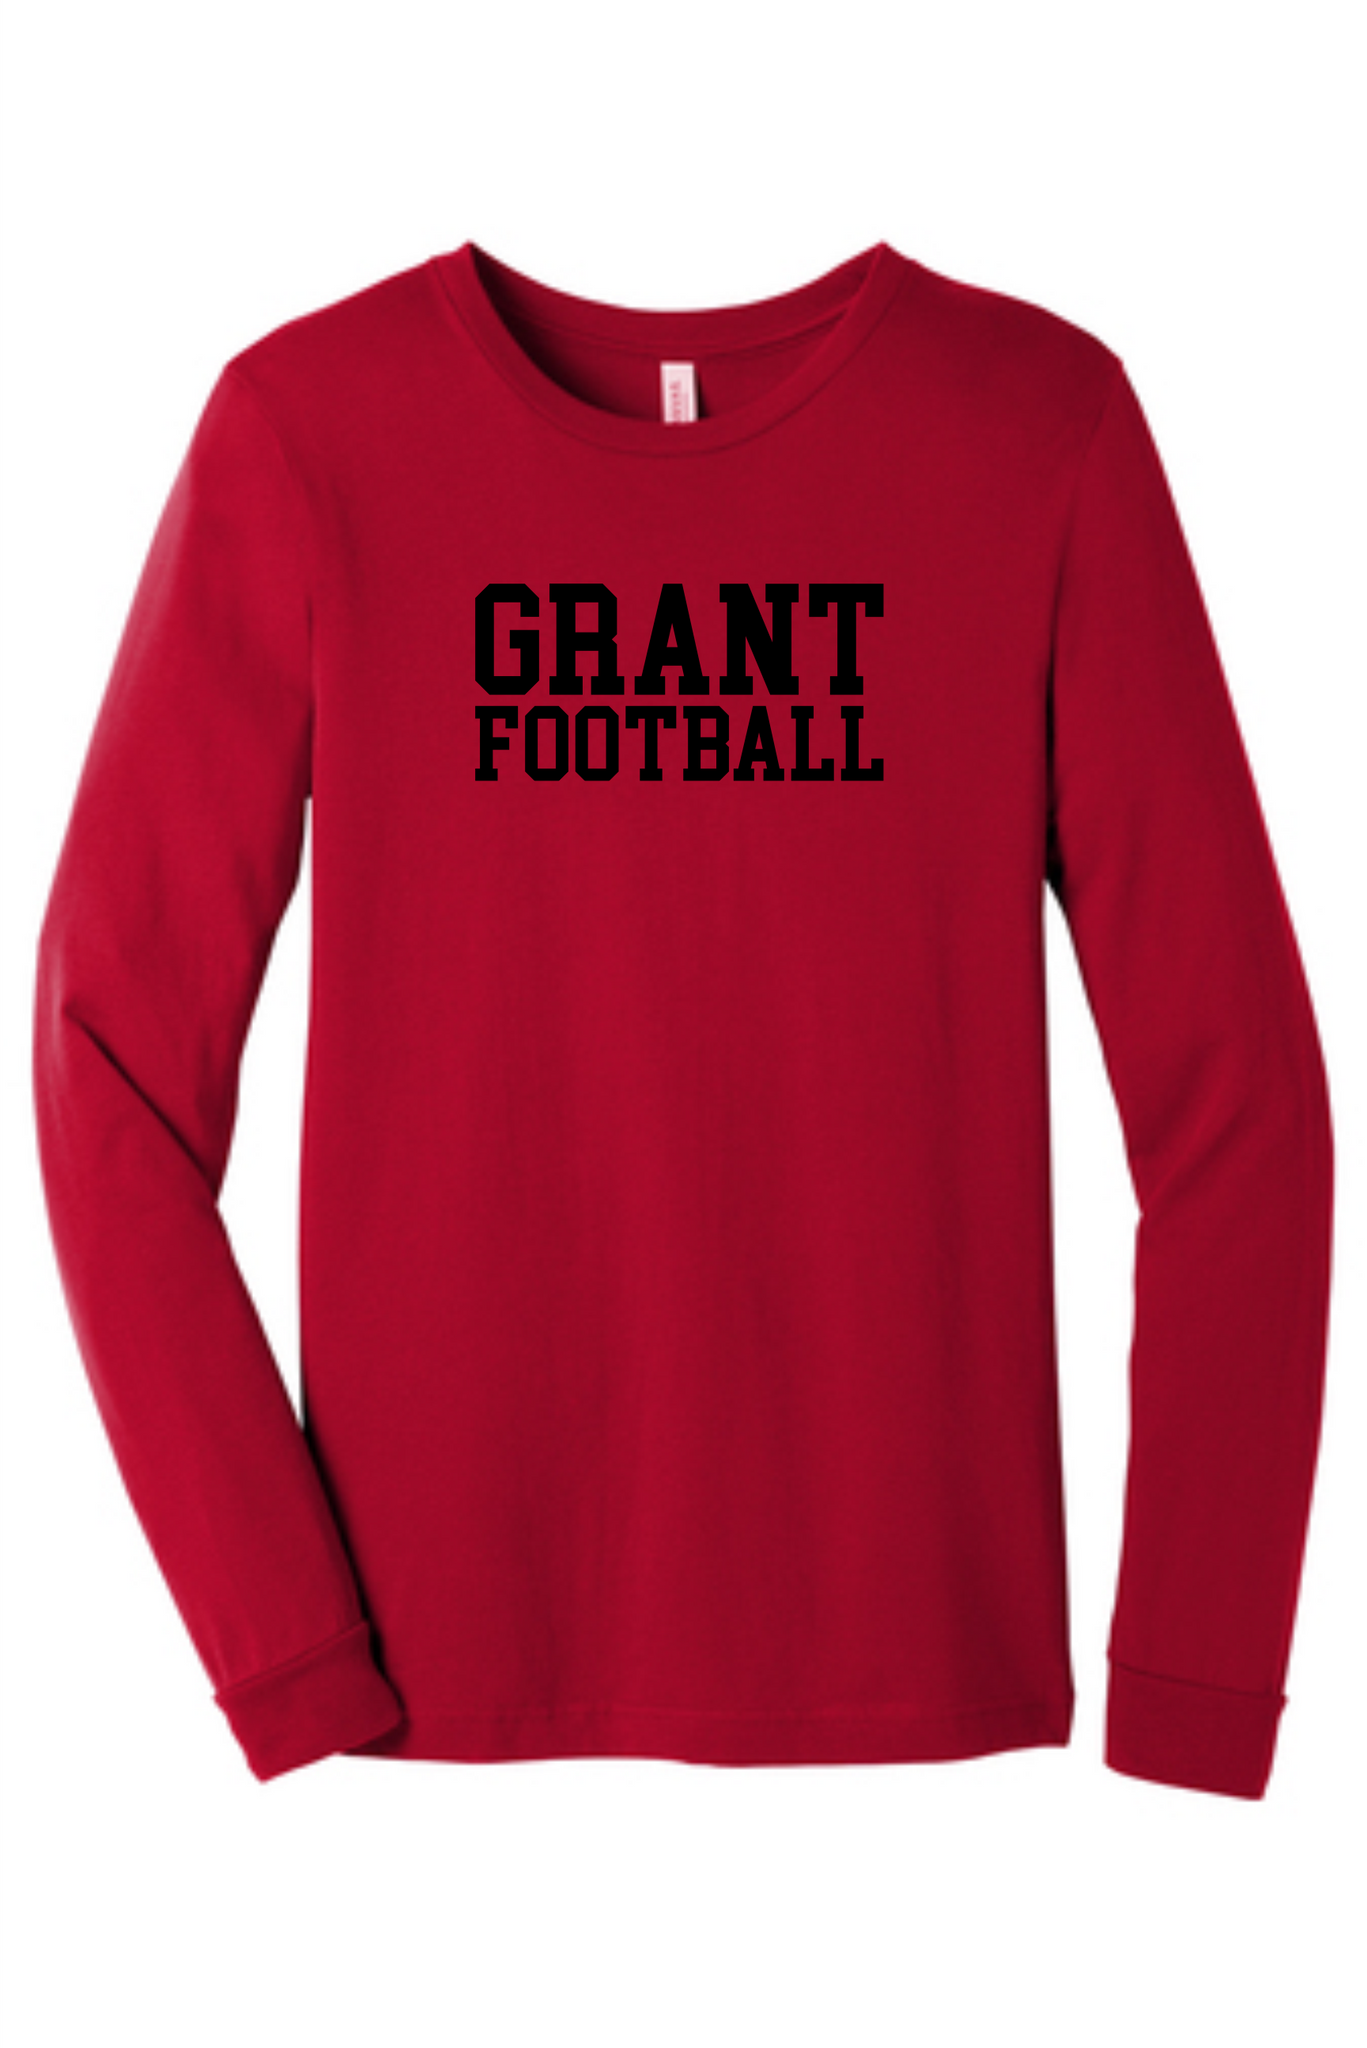 Grant Football Block Letter Shirt